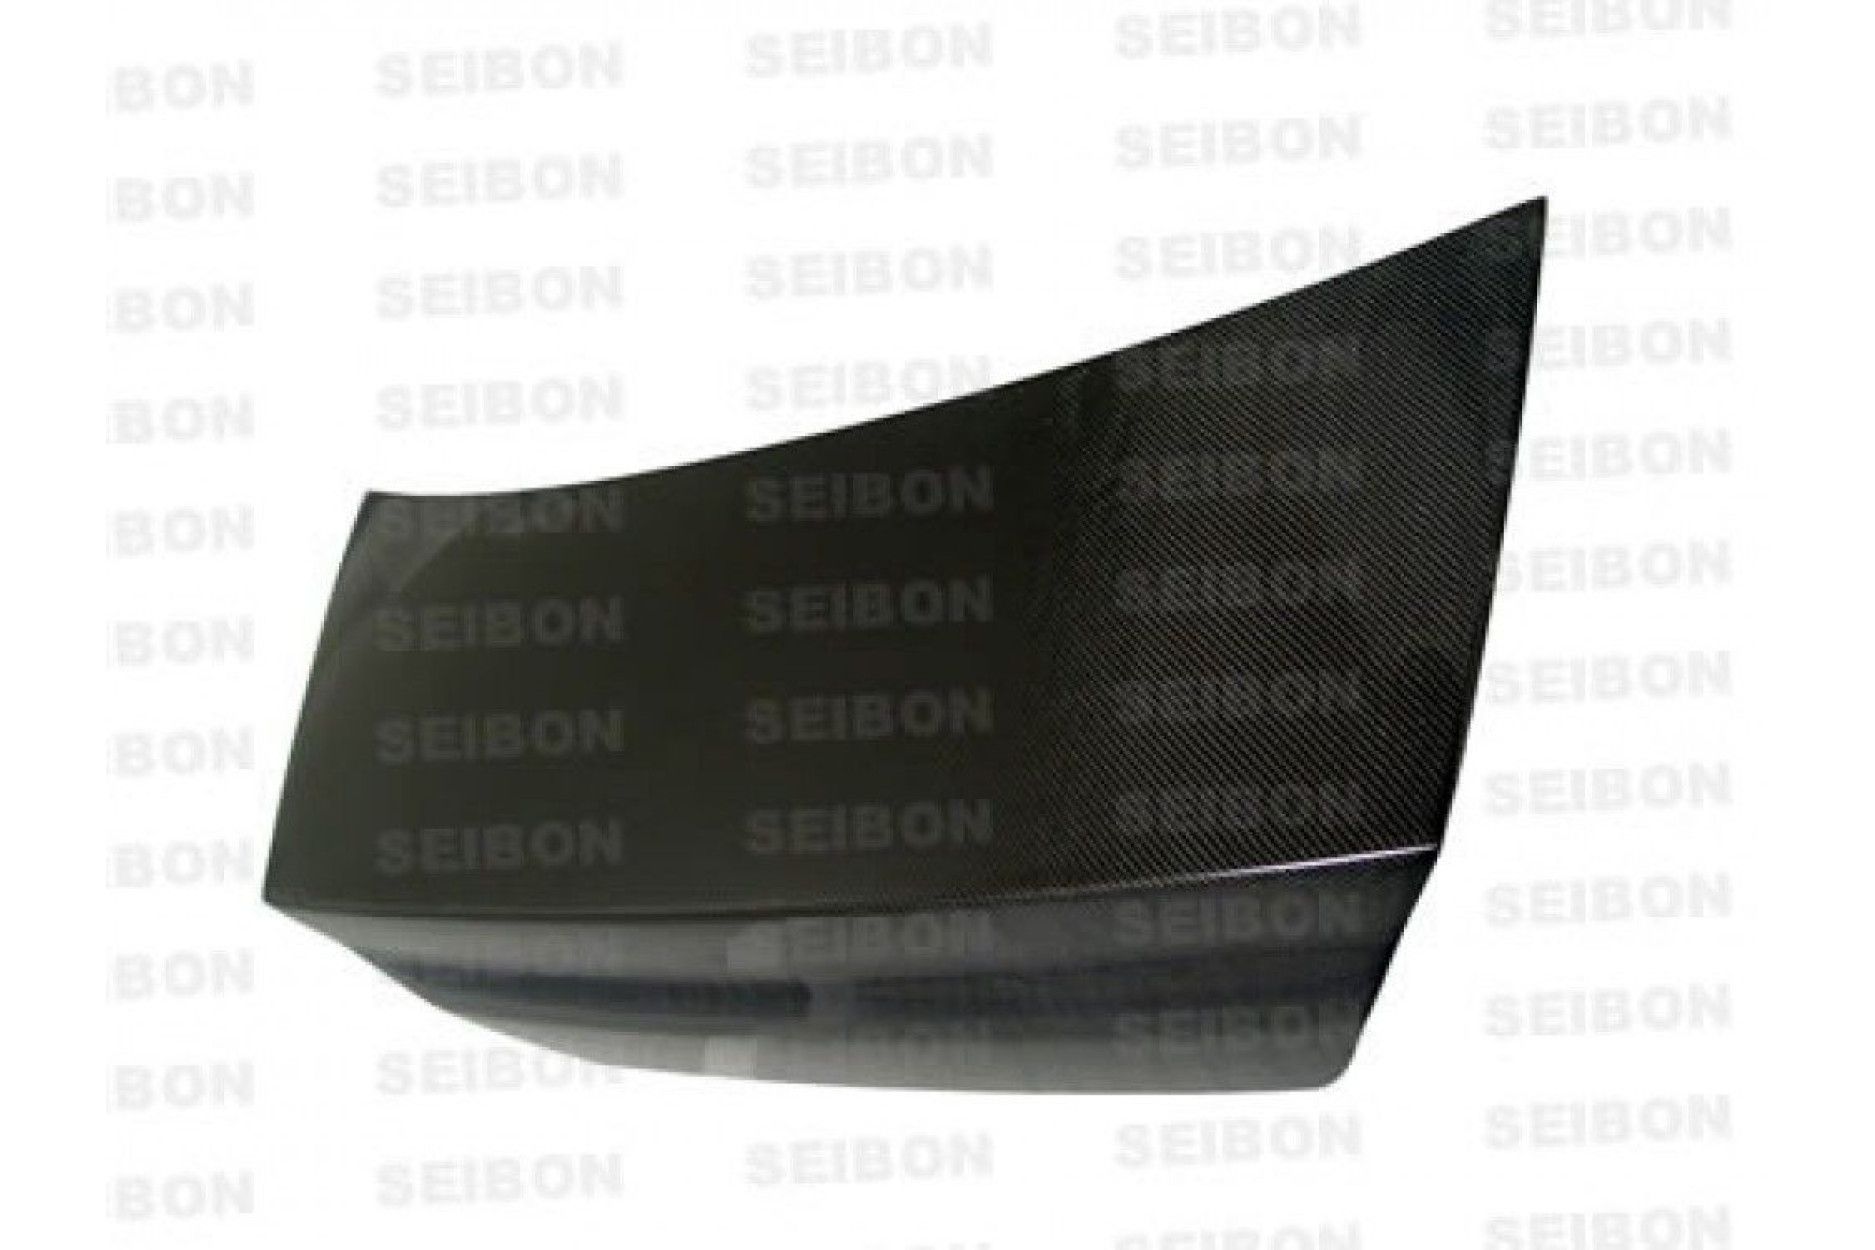 Seibon carbon TRUNK for MITSUBISHI LANCER EVO VIII / IX 2003 - 2007 OE-style (3) 